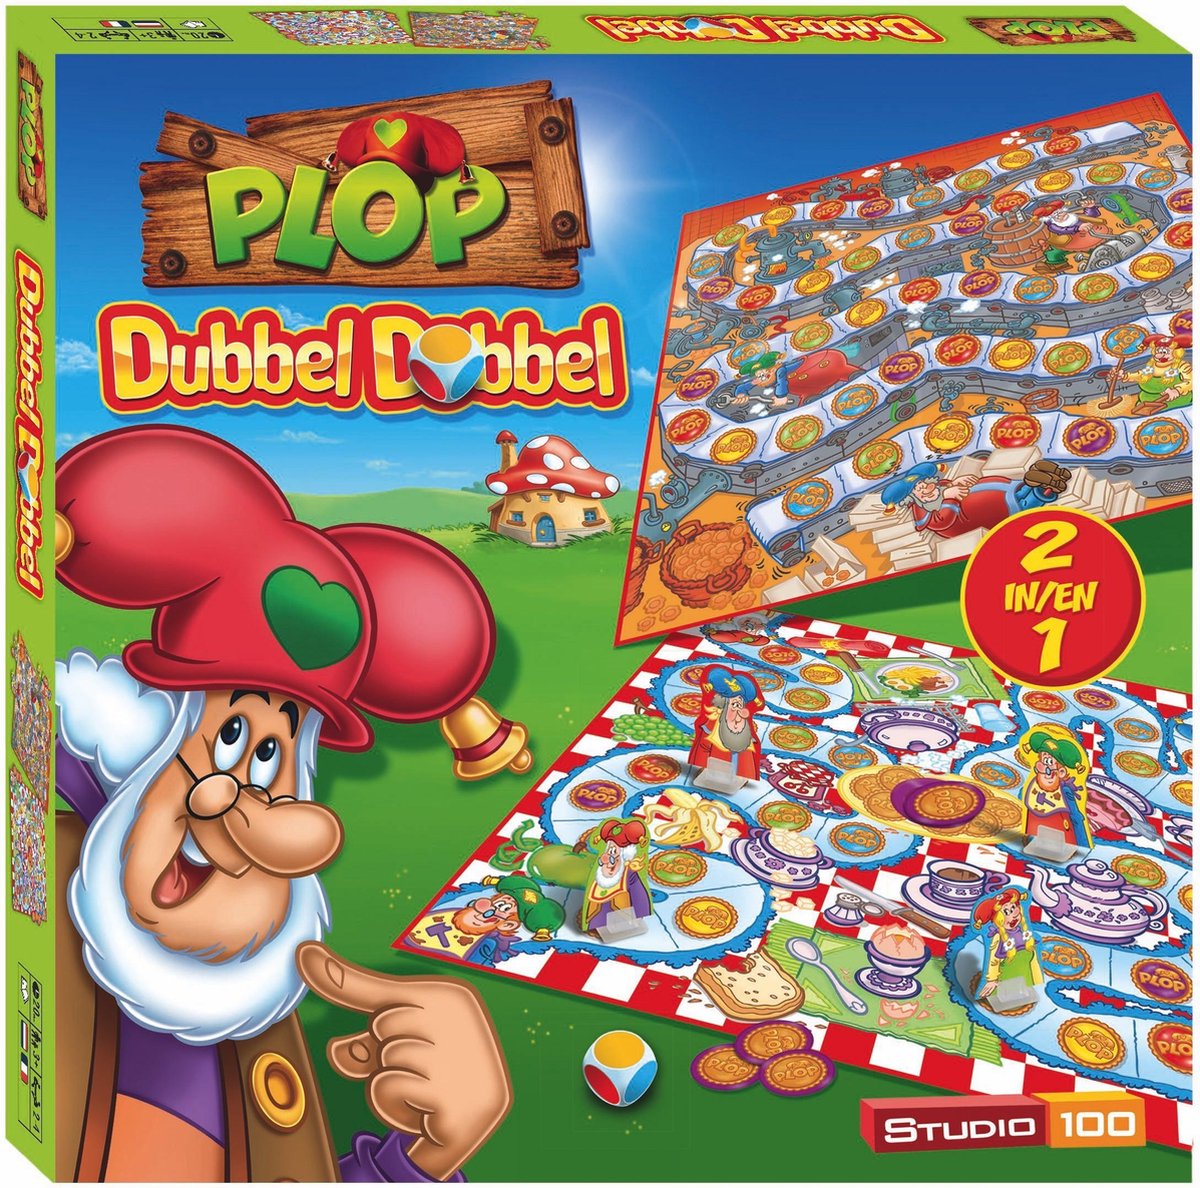 Kabouter Plop - Dobbelspel - Dubbel Dobbel - 2 spellen in 1 - help Plop en zijn vrienden in de koekjesfabriek